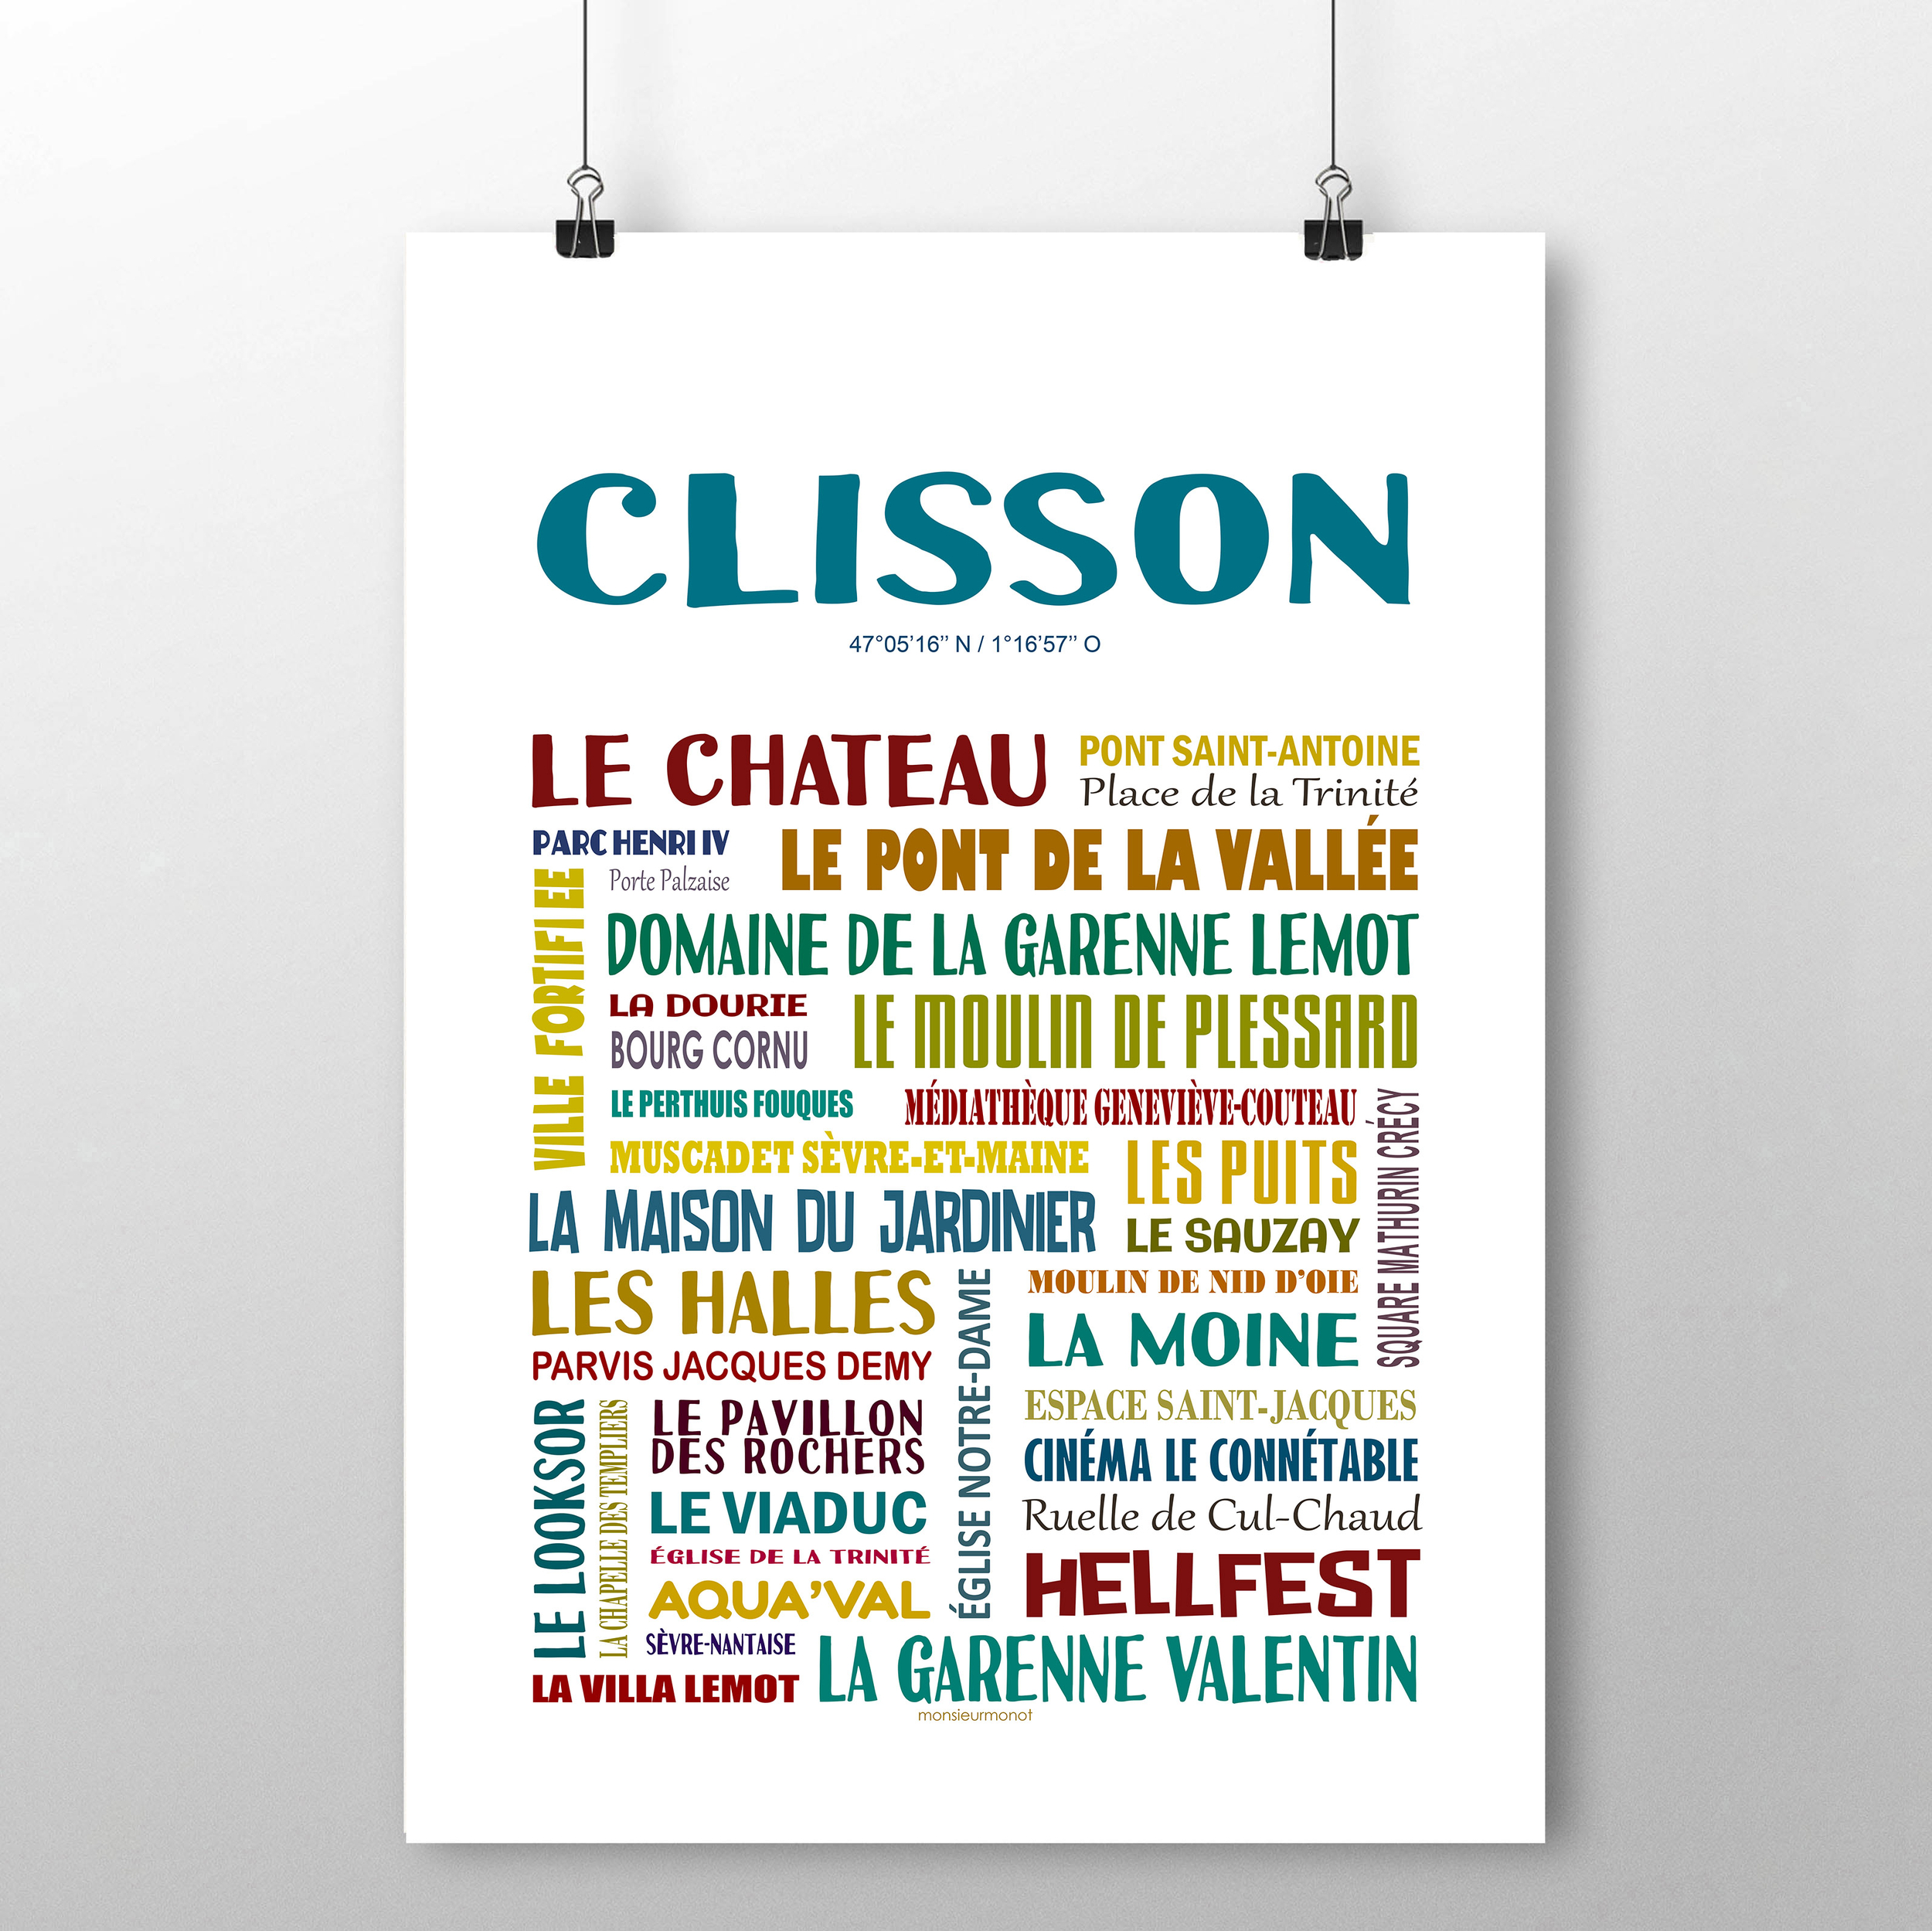 Clisson